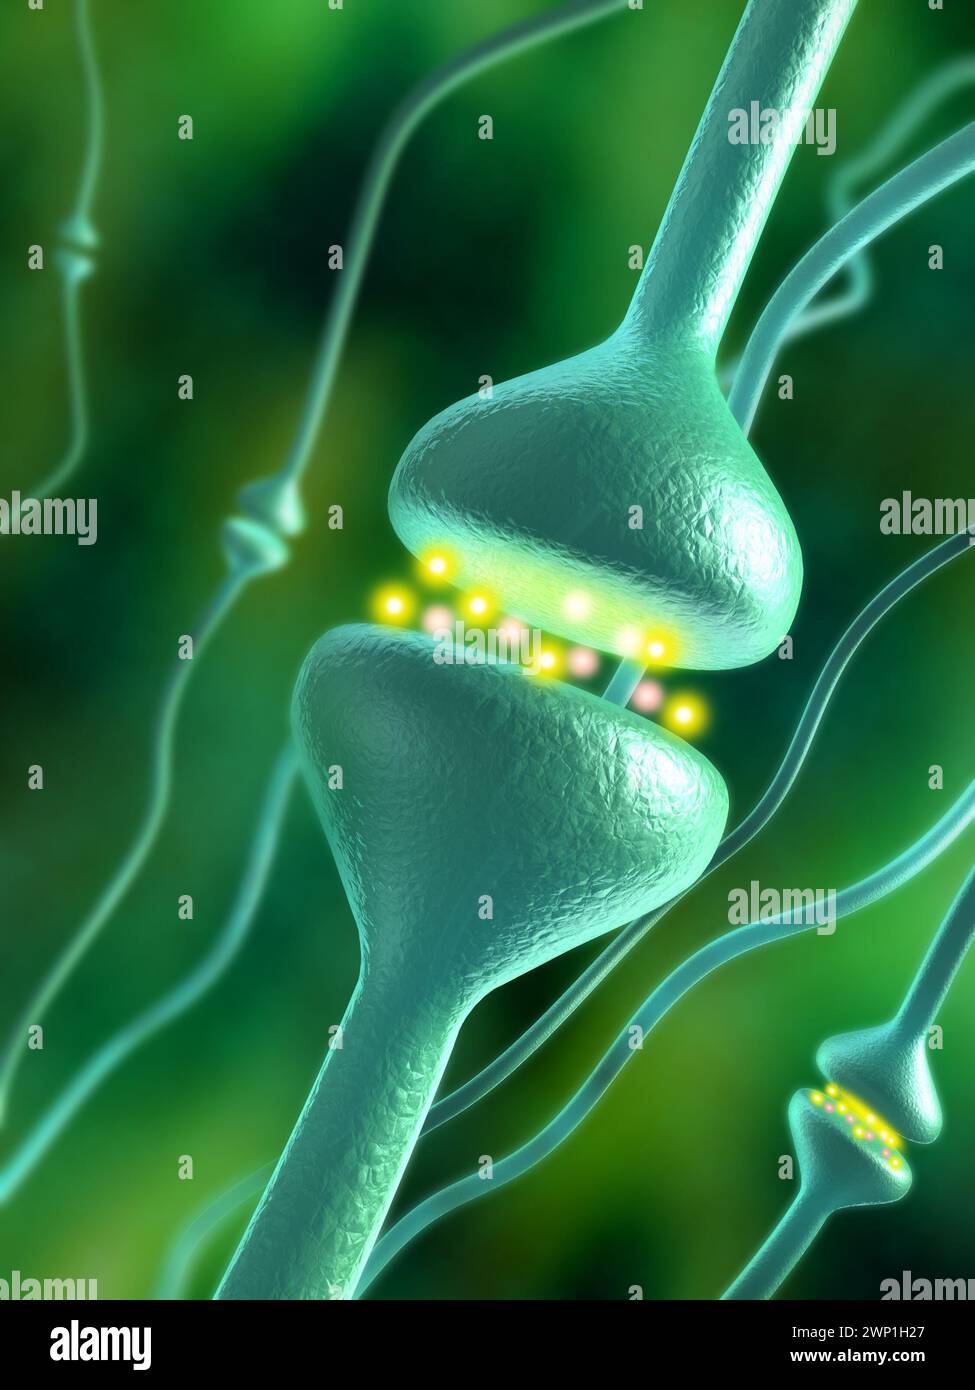 Sinapsi chimiche attivate nel cervello umano. Illustrazione digitale. Foto Stock